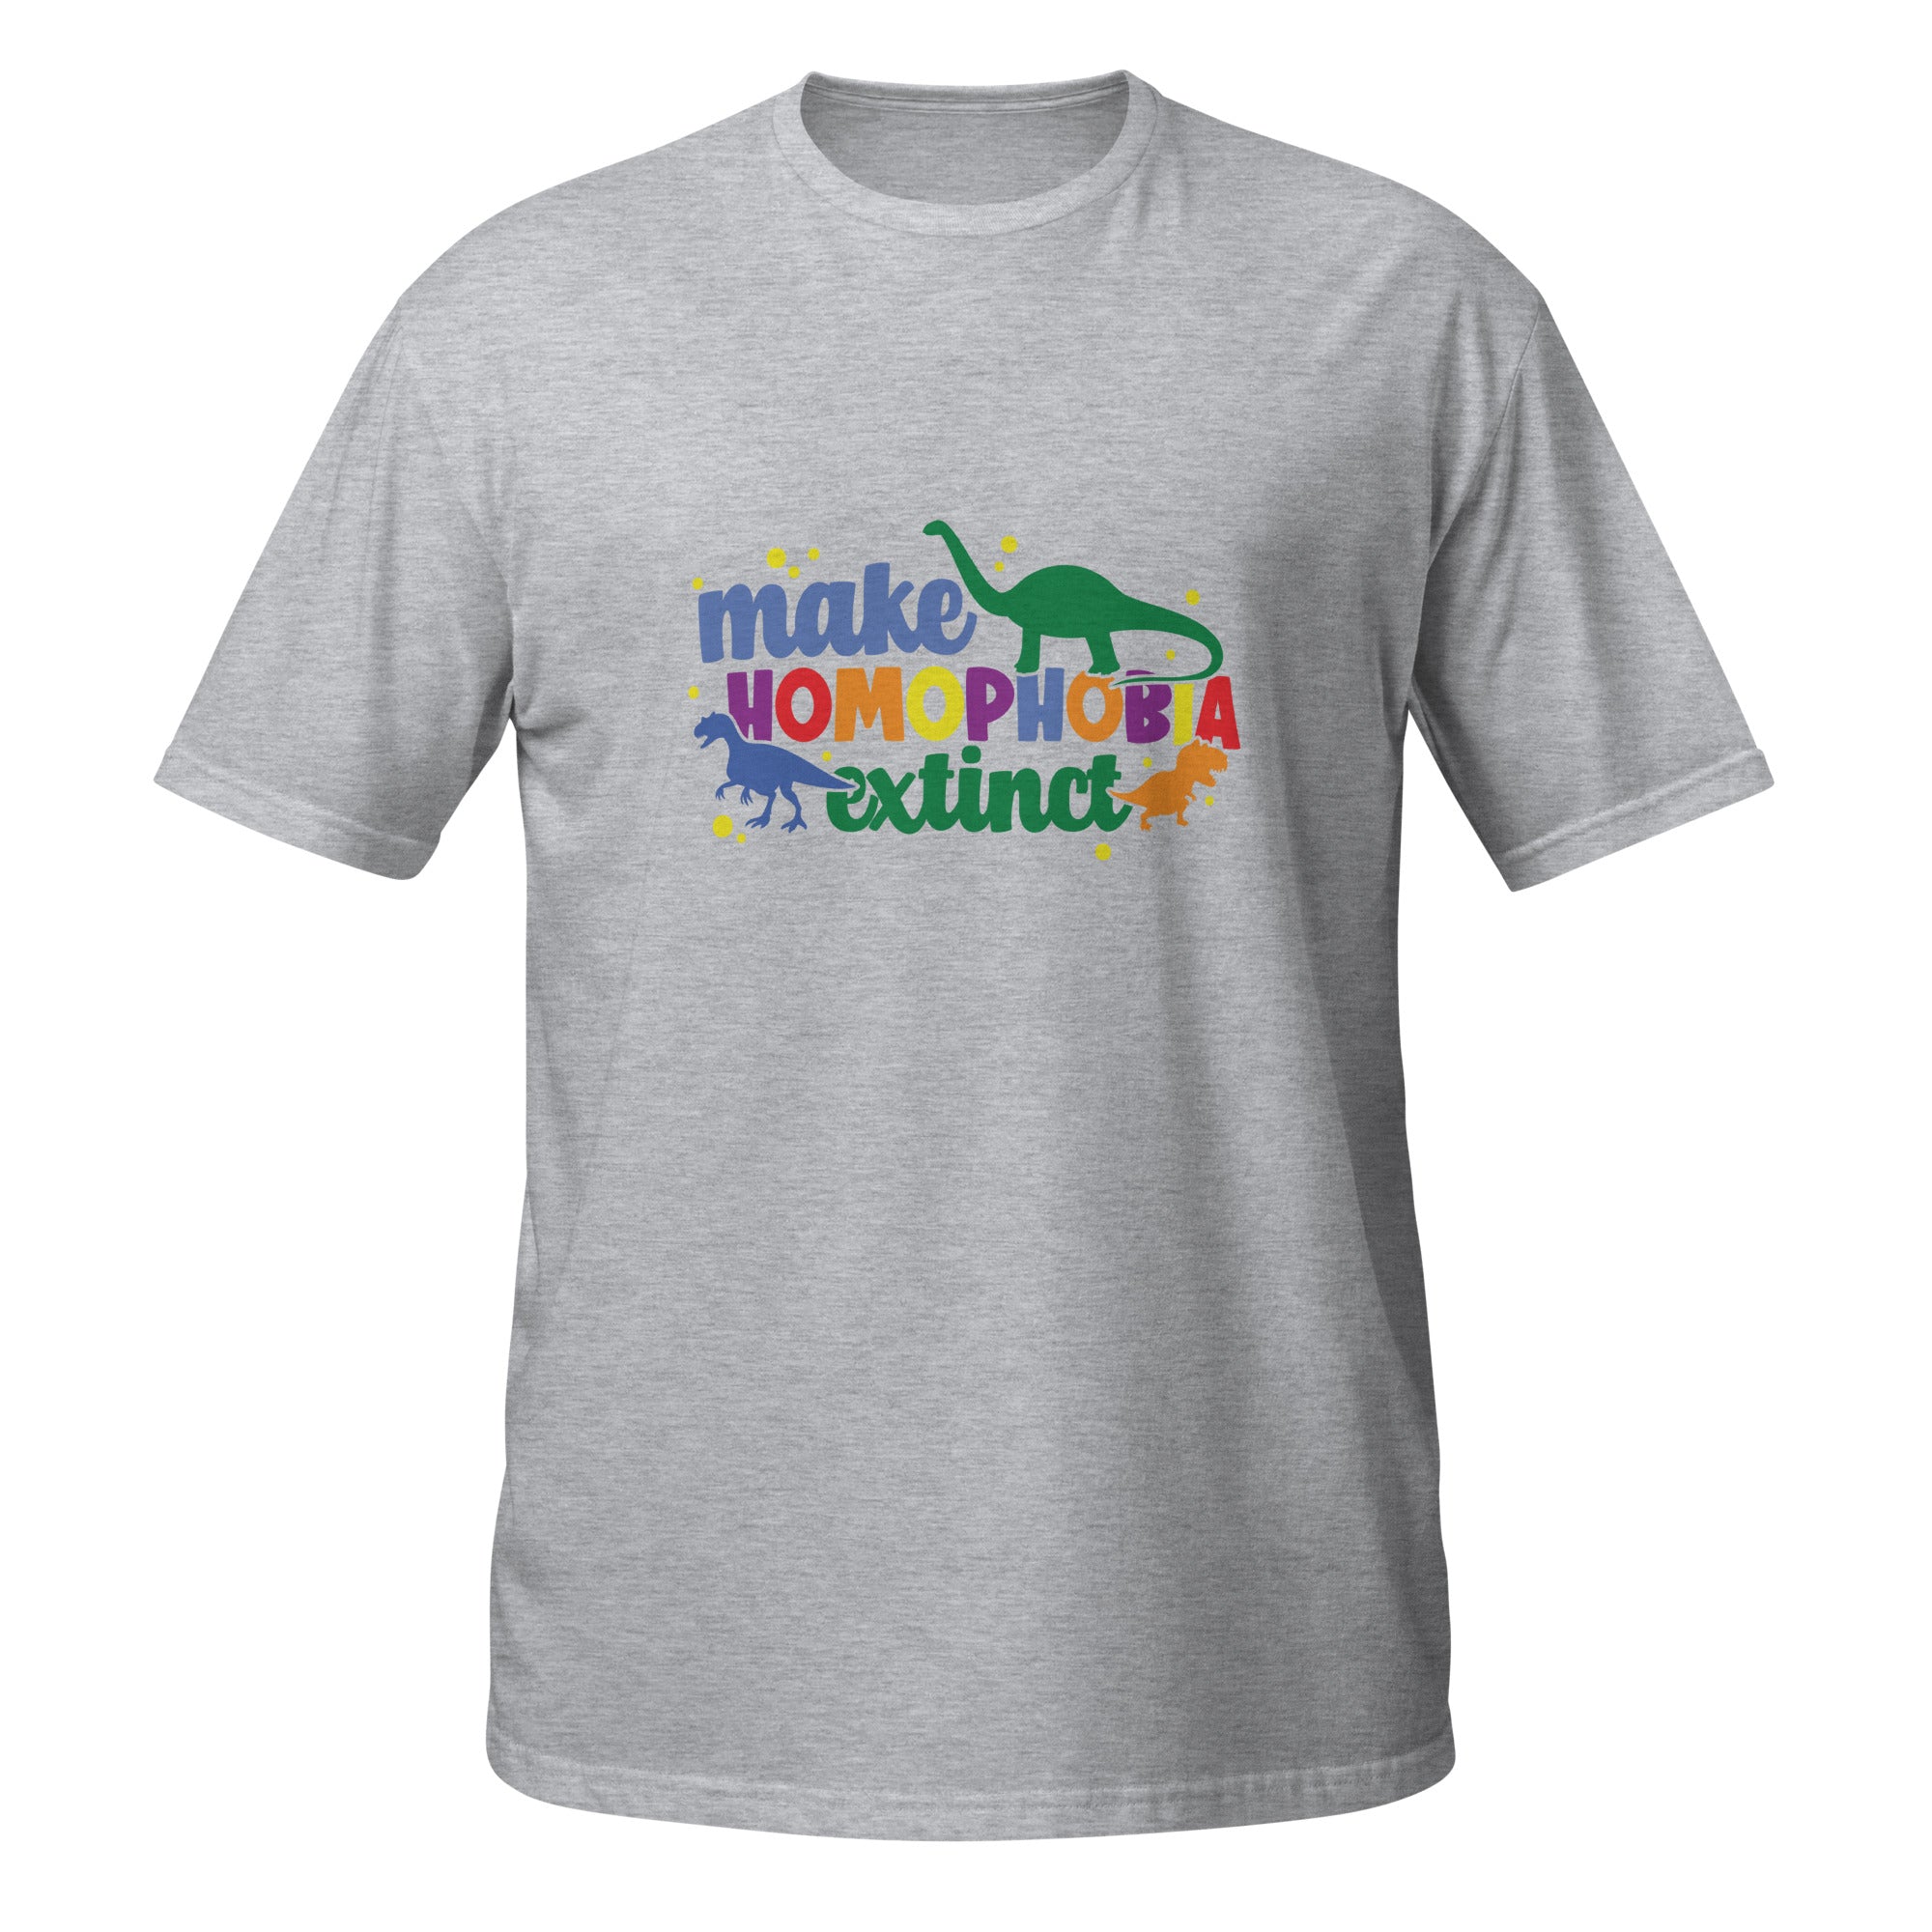 Short-Sleeve Unisex T-Shirt- Make homophobia extinct